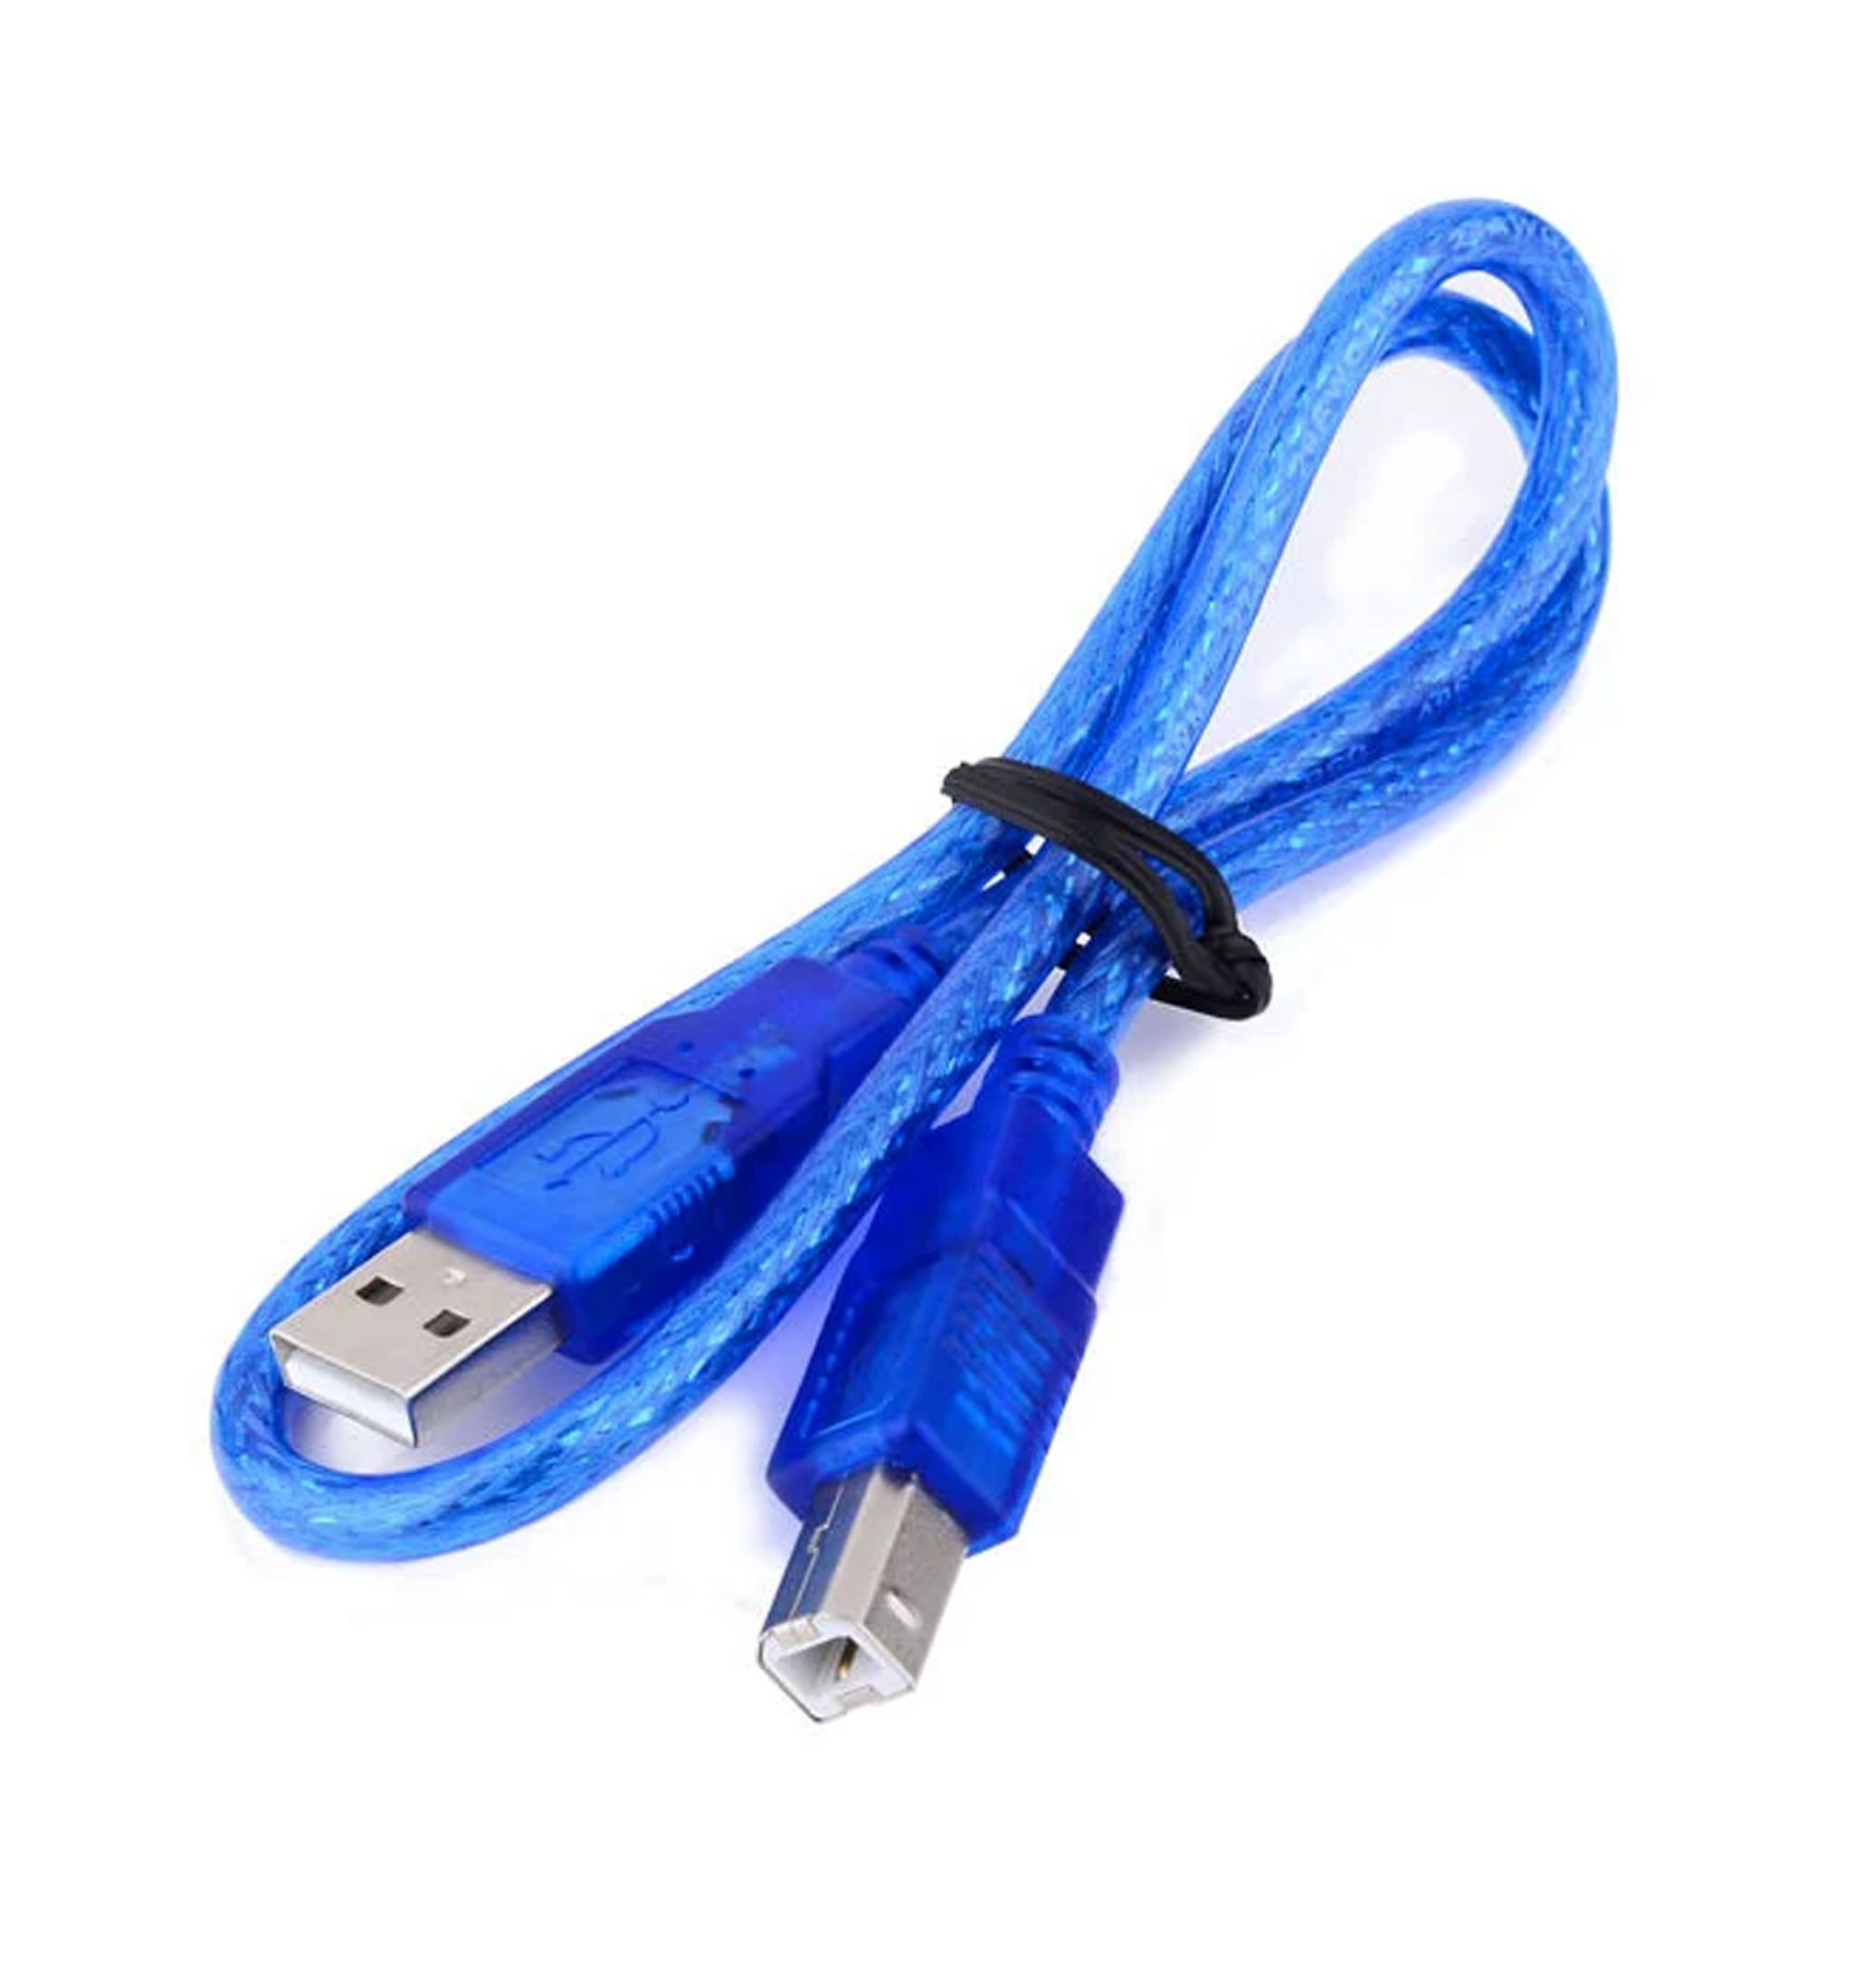 ARDUINO UNO R3 CON CABLE USB COMPATIBLE - SAI SAC